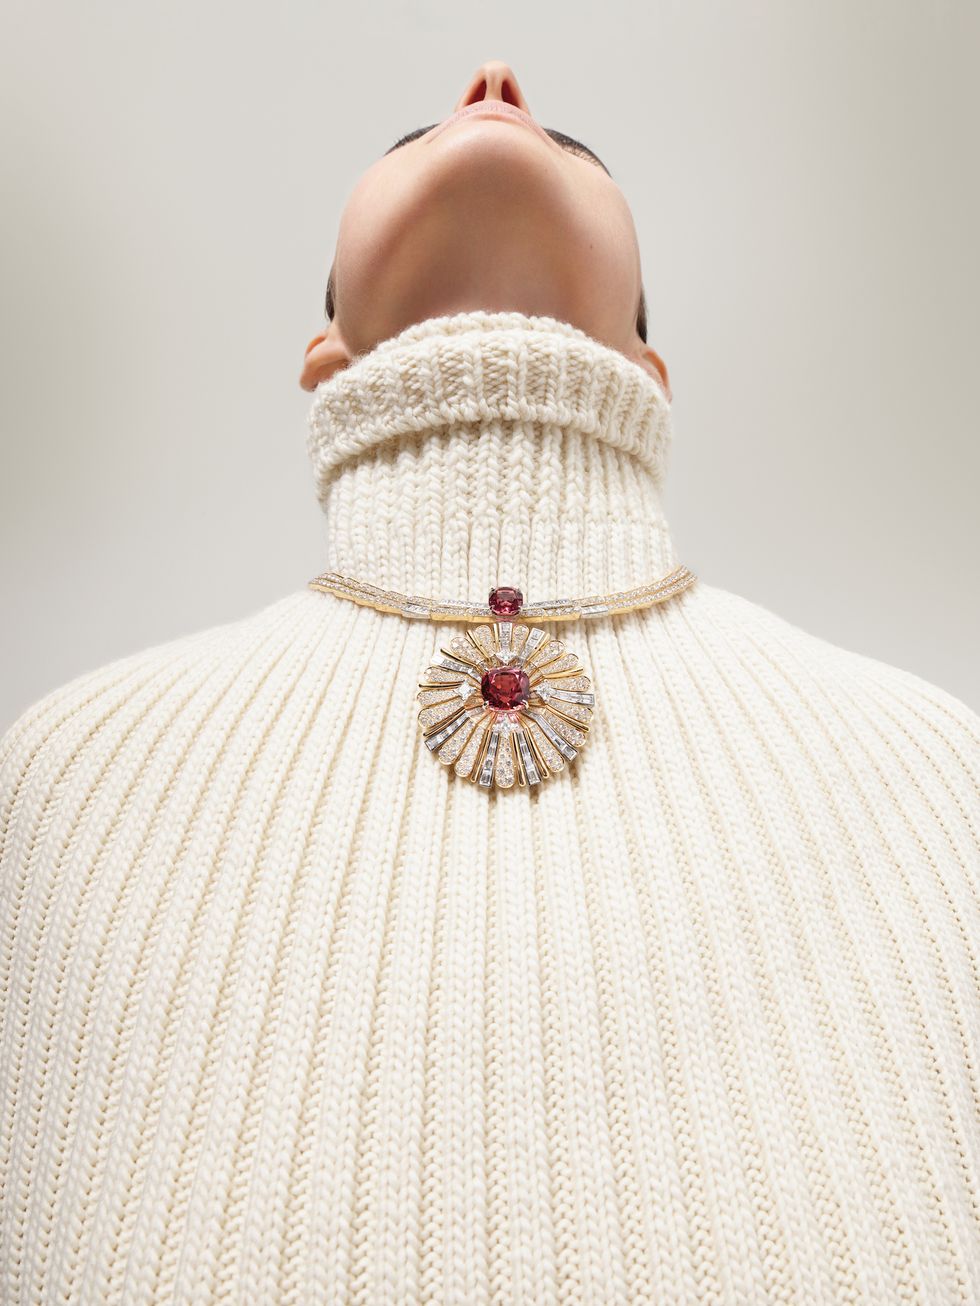 Las joyas de Louis Vuitton elevan la flor del Monogram a un nuevo